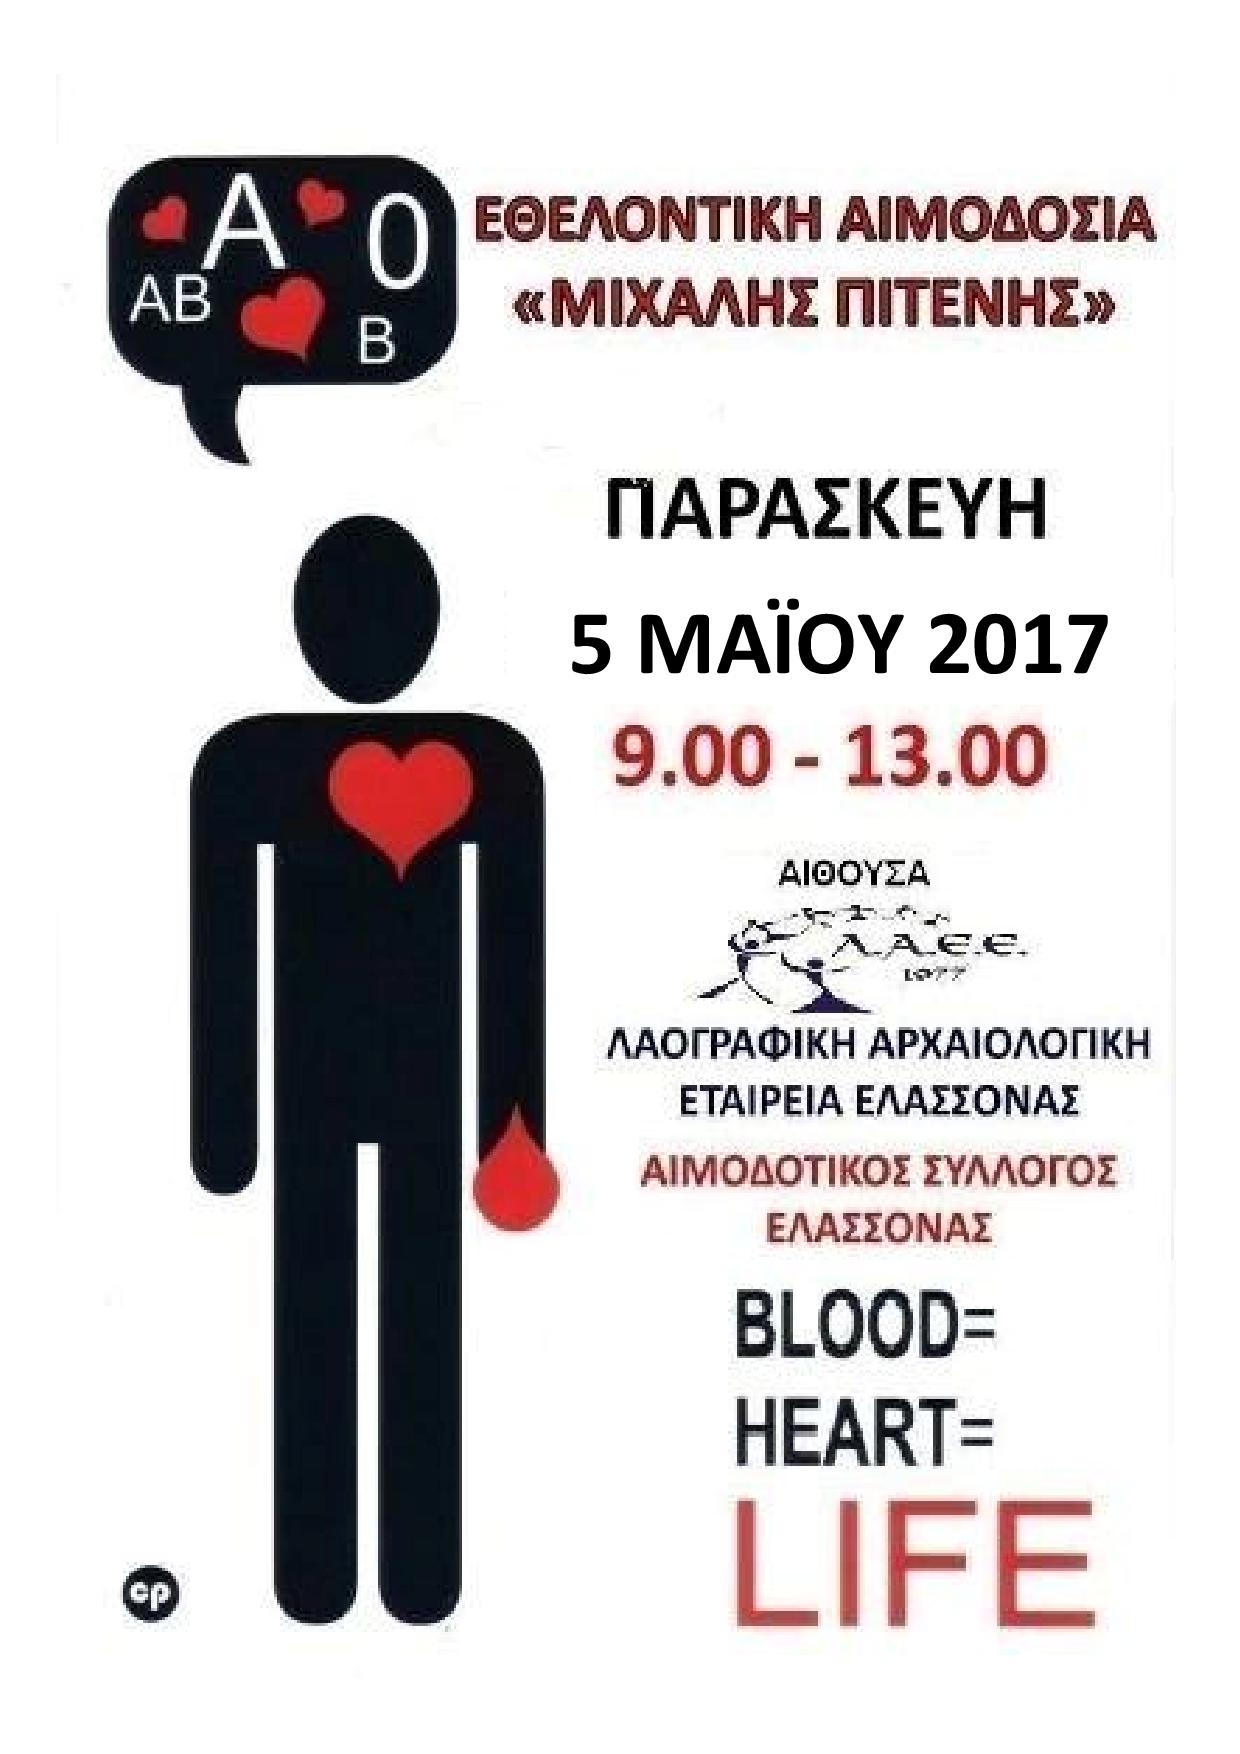 Εθελοντική αιμοδοσία την Παρασκευή στην Ελασσόνα 